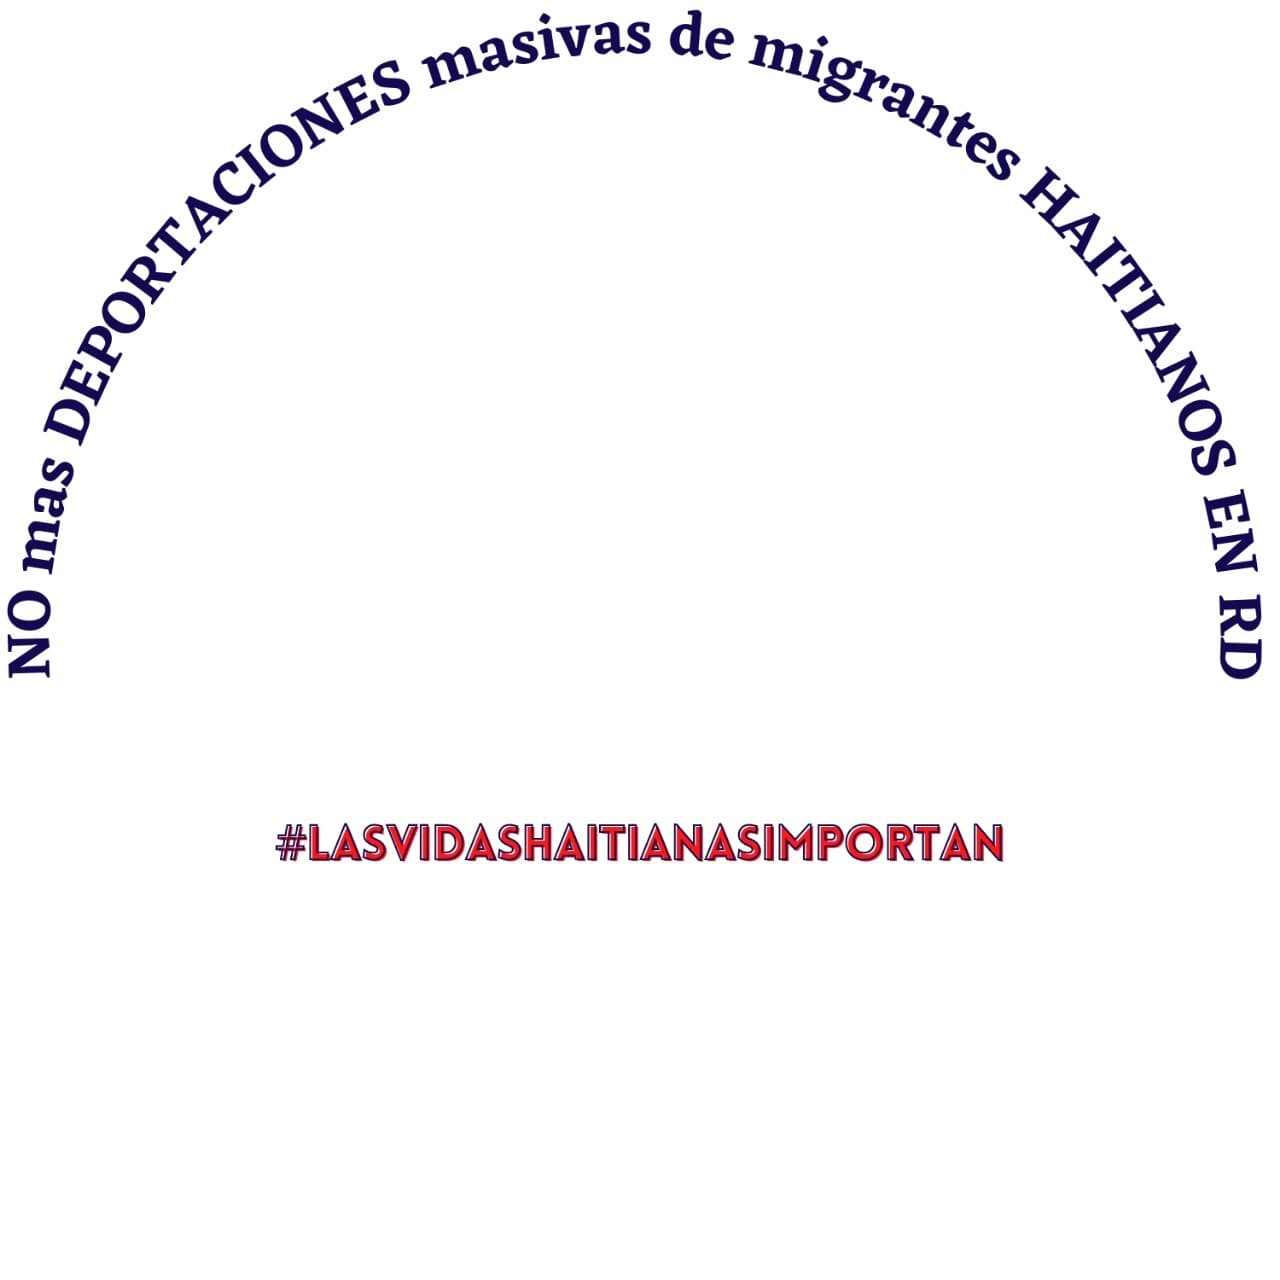 Dia de solidariedade com o Haiti e a migração haitiana na República Dominicana e no mundo